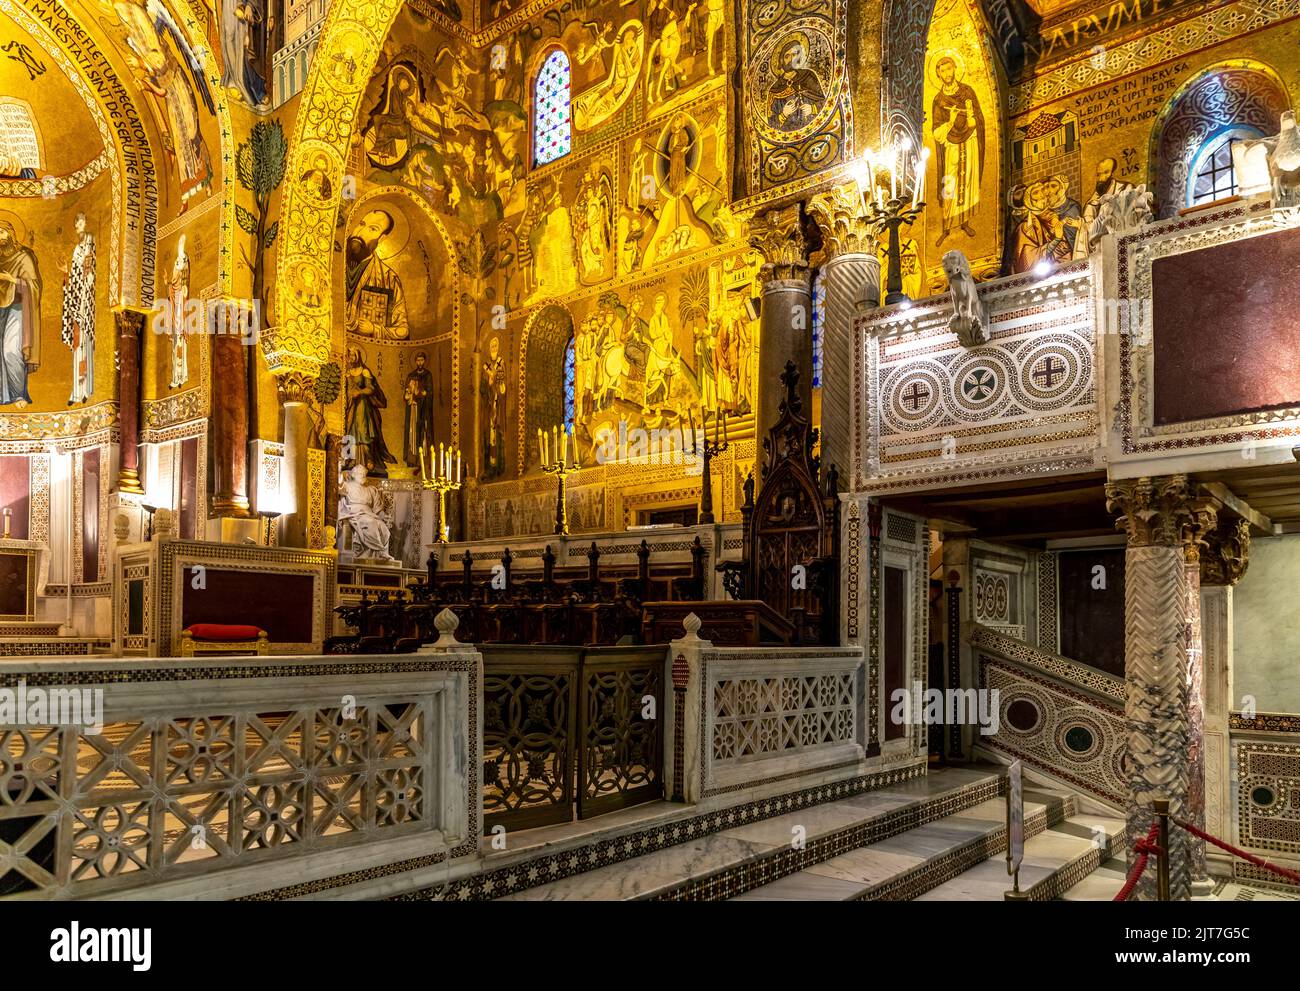 Palerme, Sicile - 6 juillet 2020 : intérieur de la chapelle palatine de Palerme en Sicile, Italie Banque D'Images